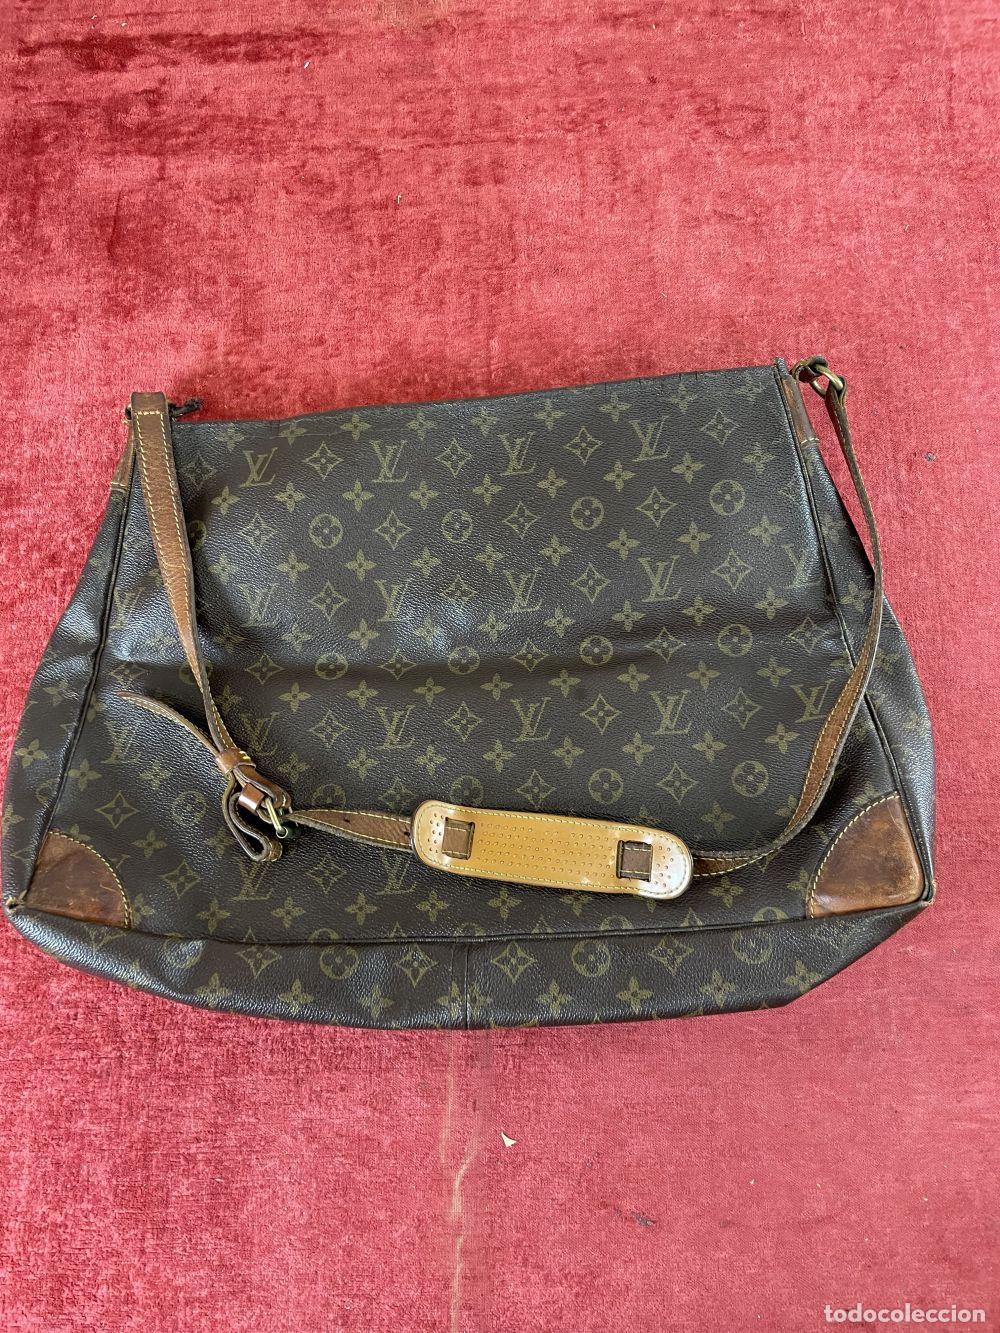 precioso bolso louis vuitton ellipse de 1997 or - Buy Antique handbags and  purses on todocoleccion